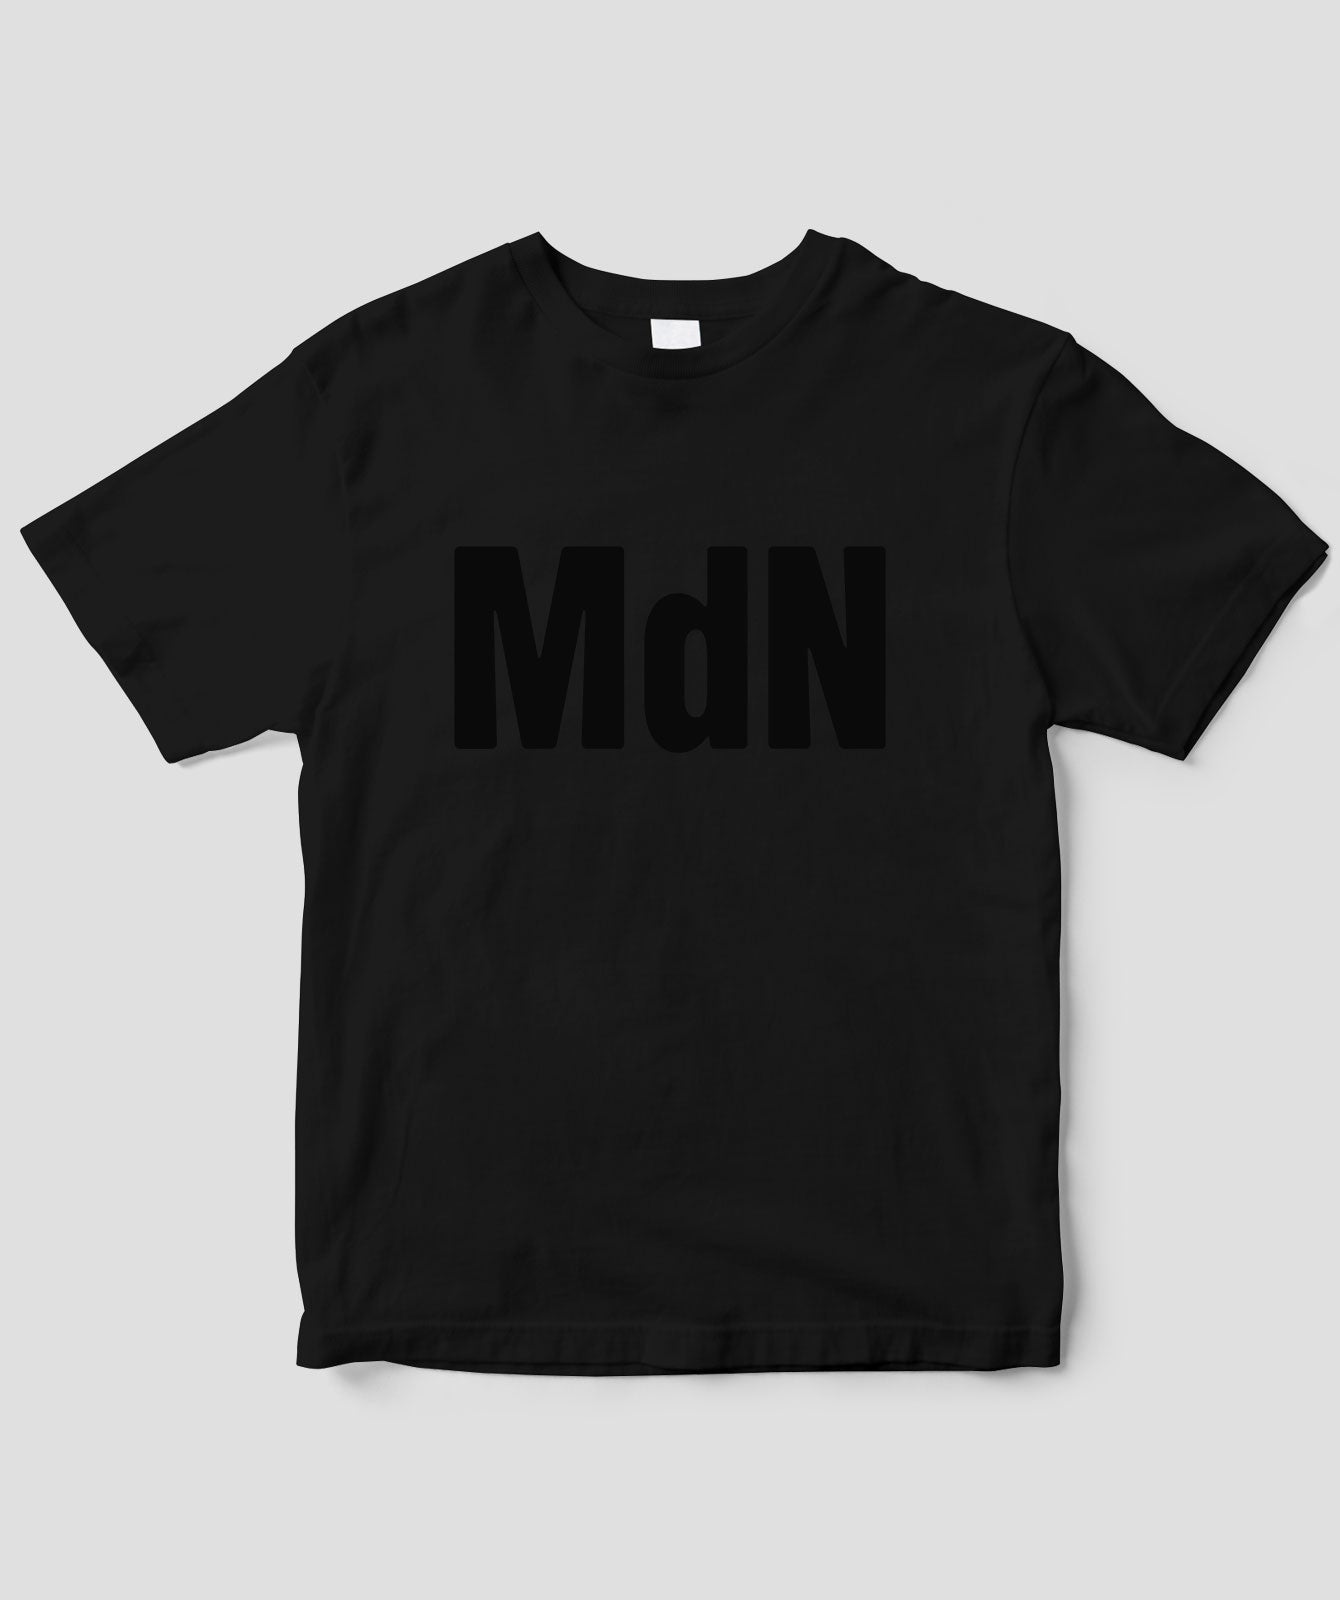 MdN / 雑誌ロゴT black / MdN